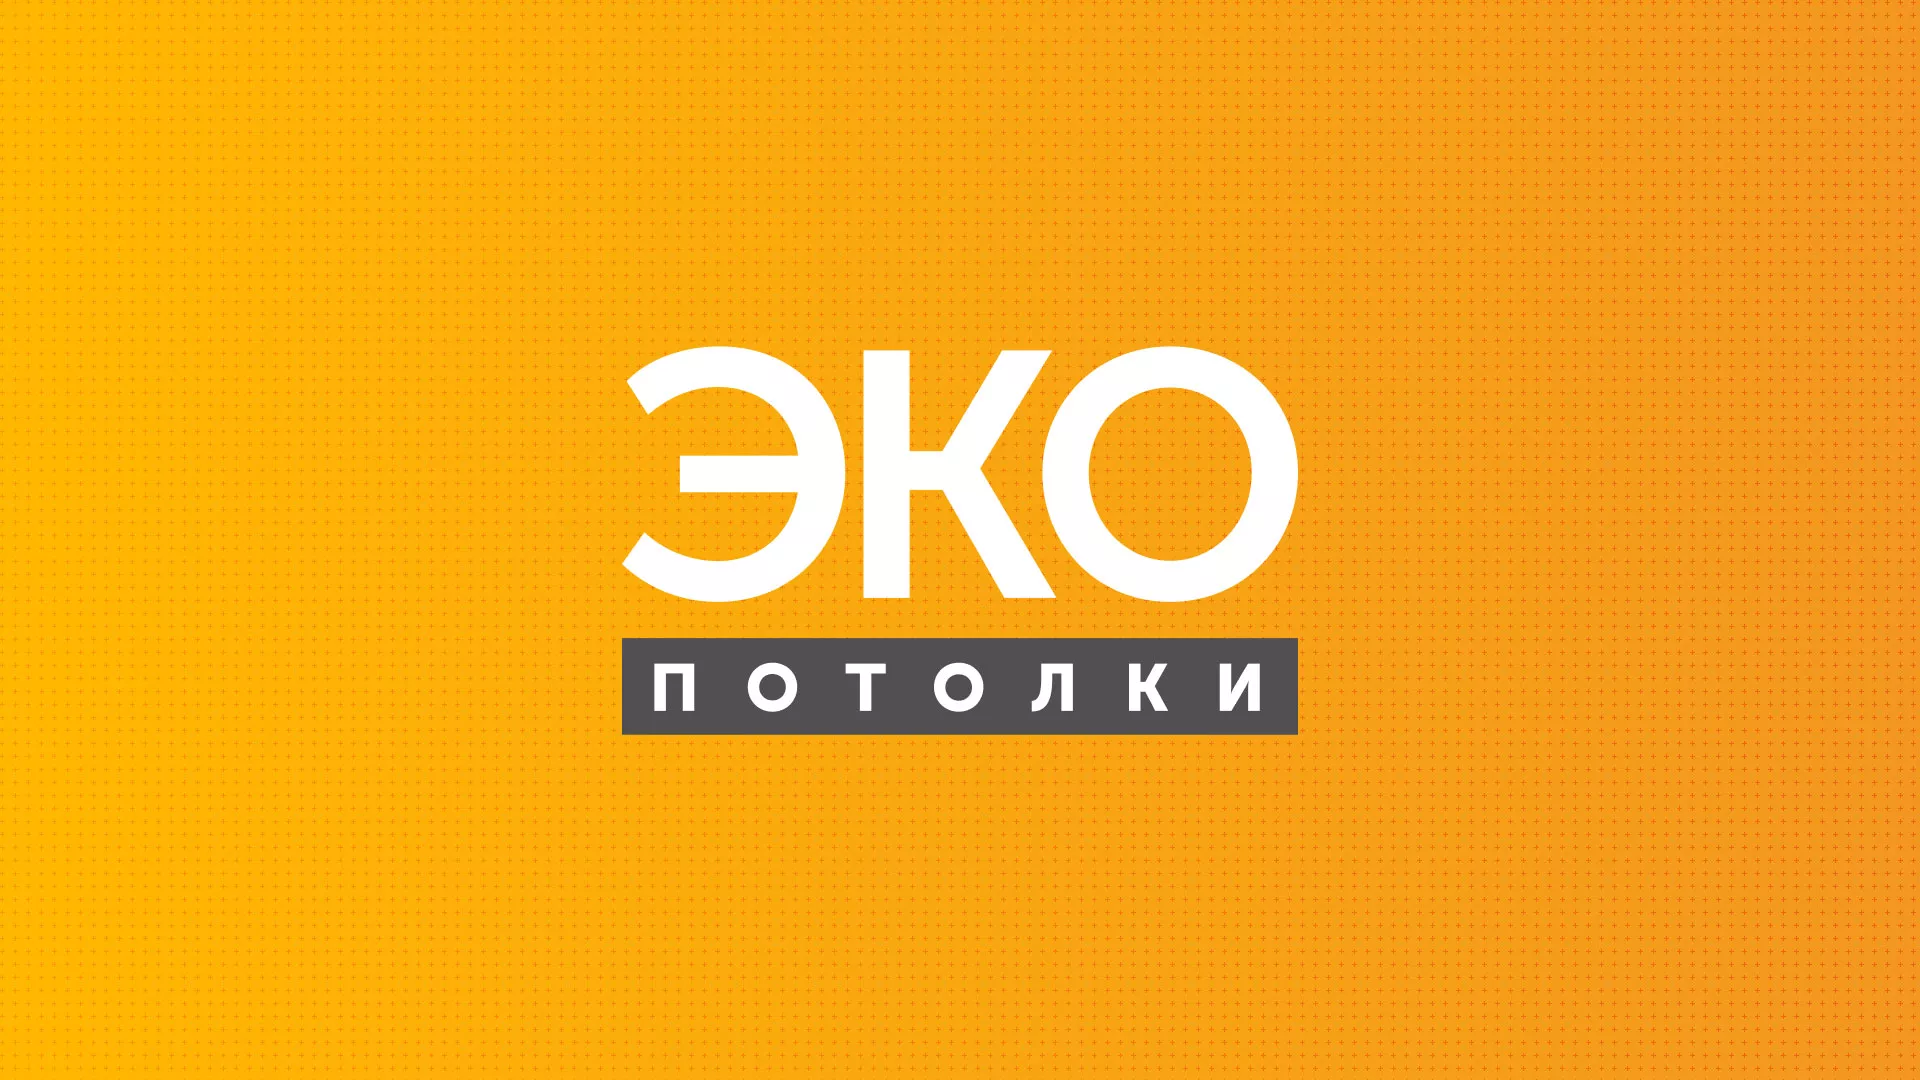 Разработка сайта по натяжным потолкам «Эко Потолки» в Жуковке